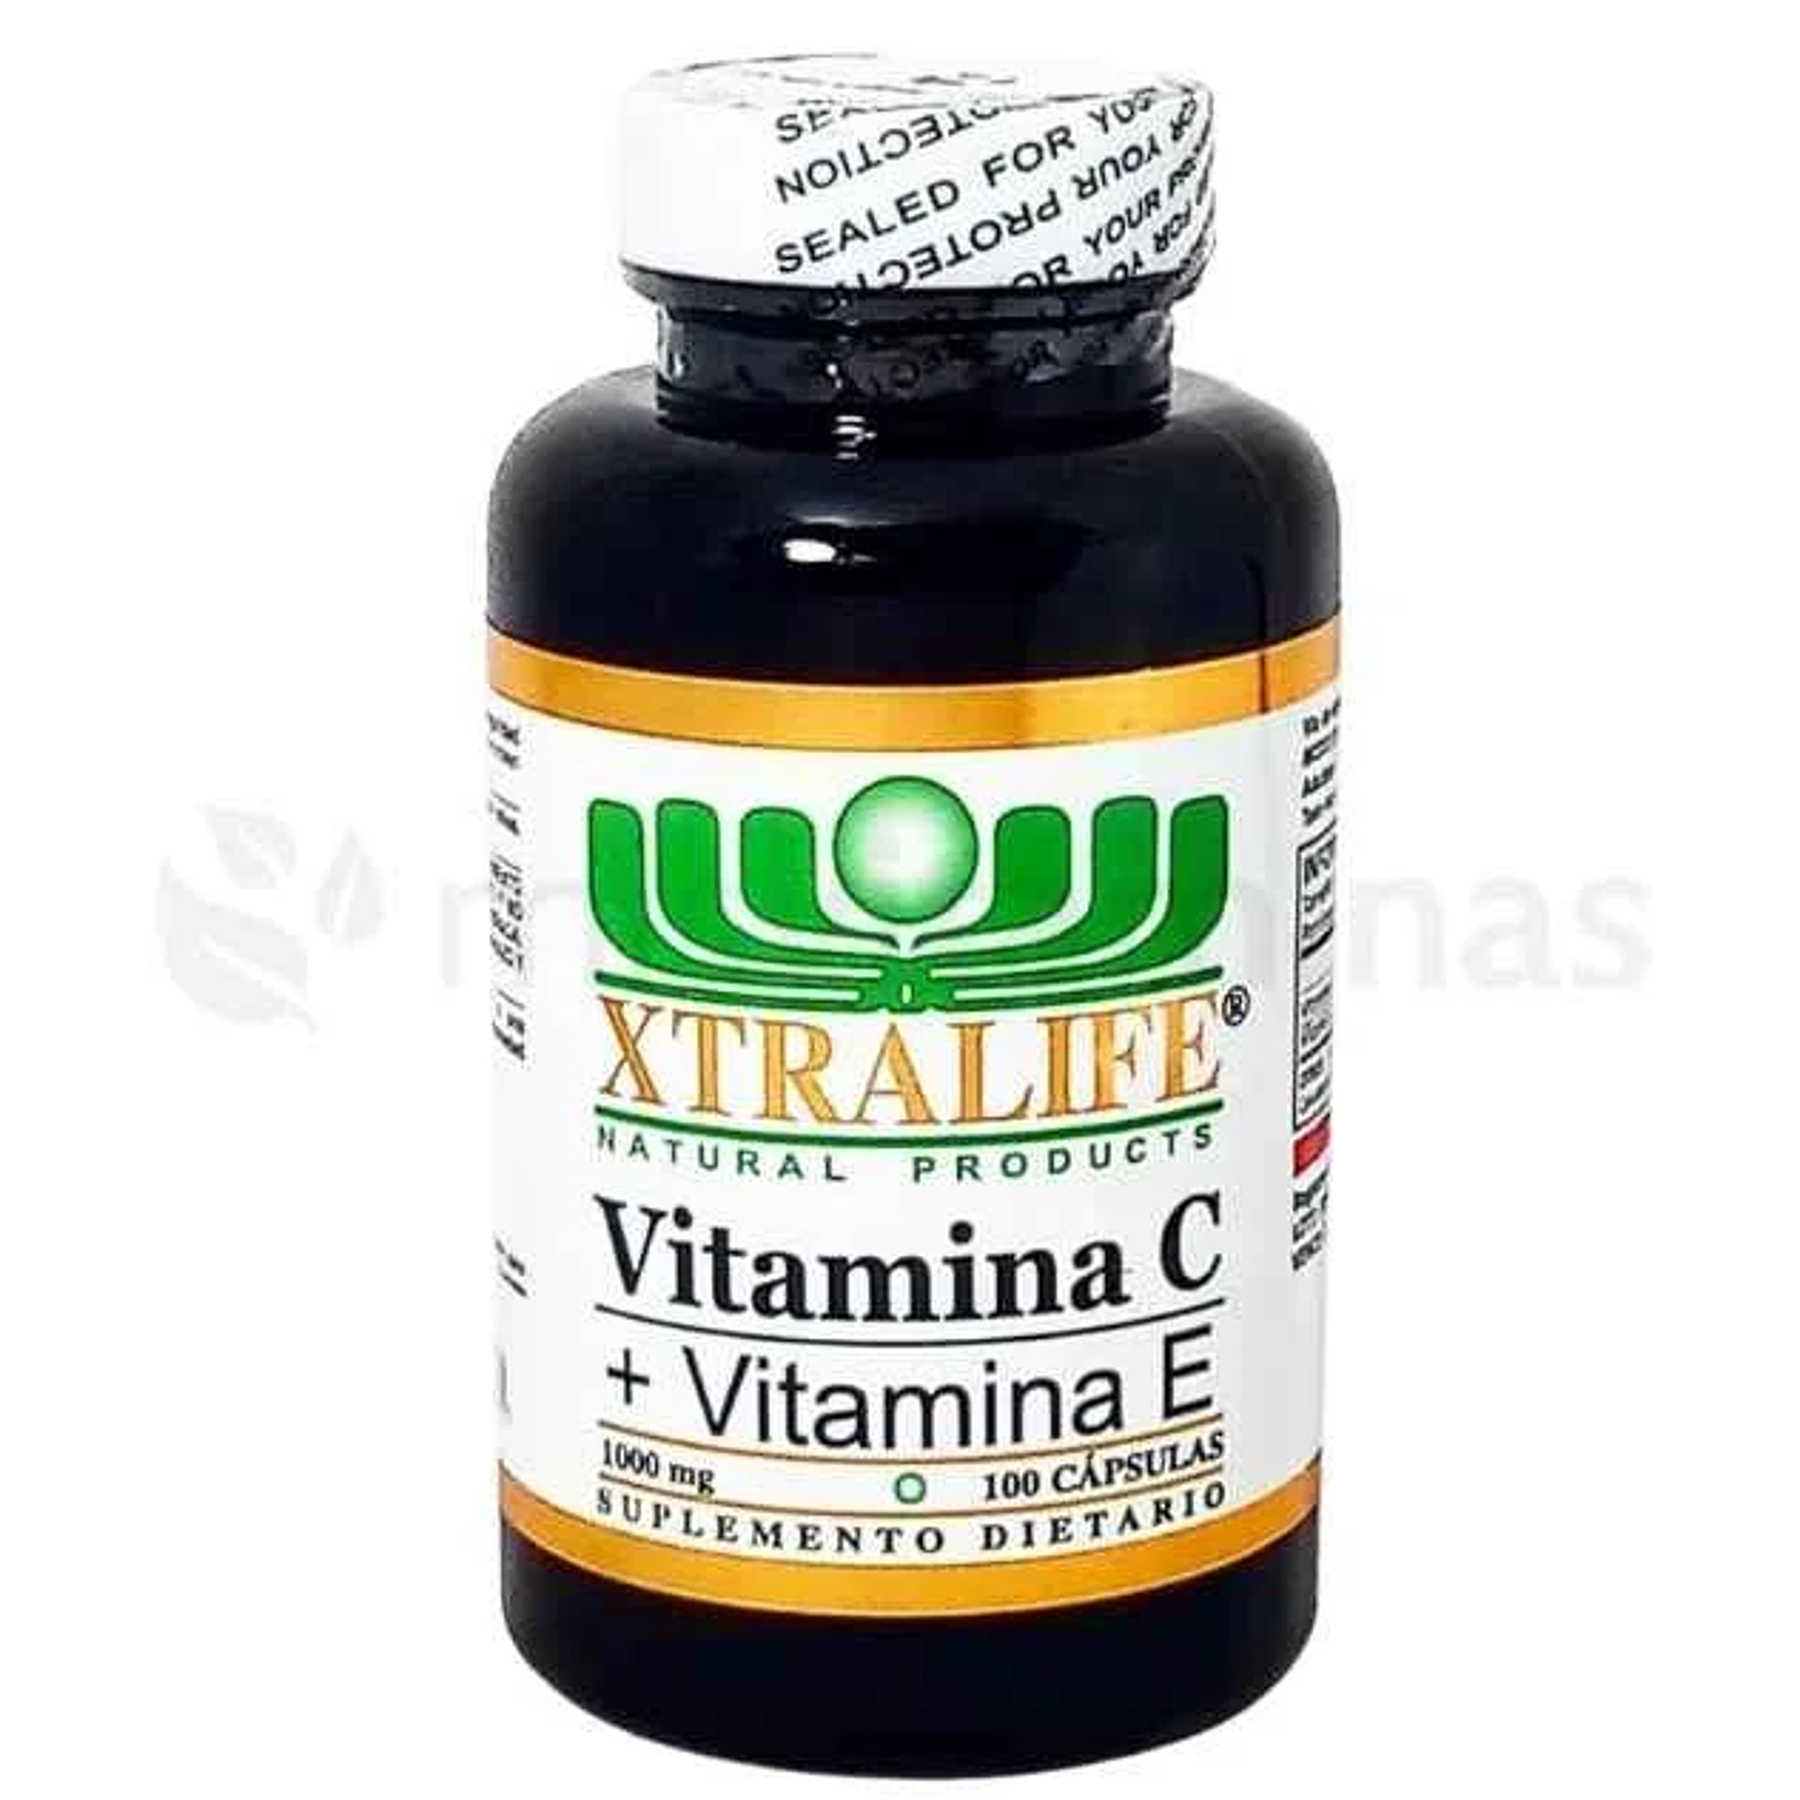 Vitamina C mas Vitamina E Xtralife 